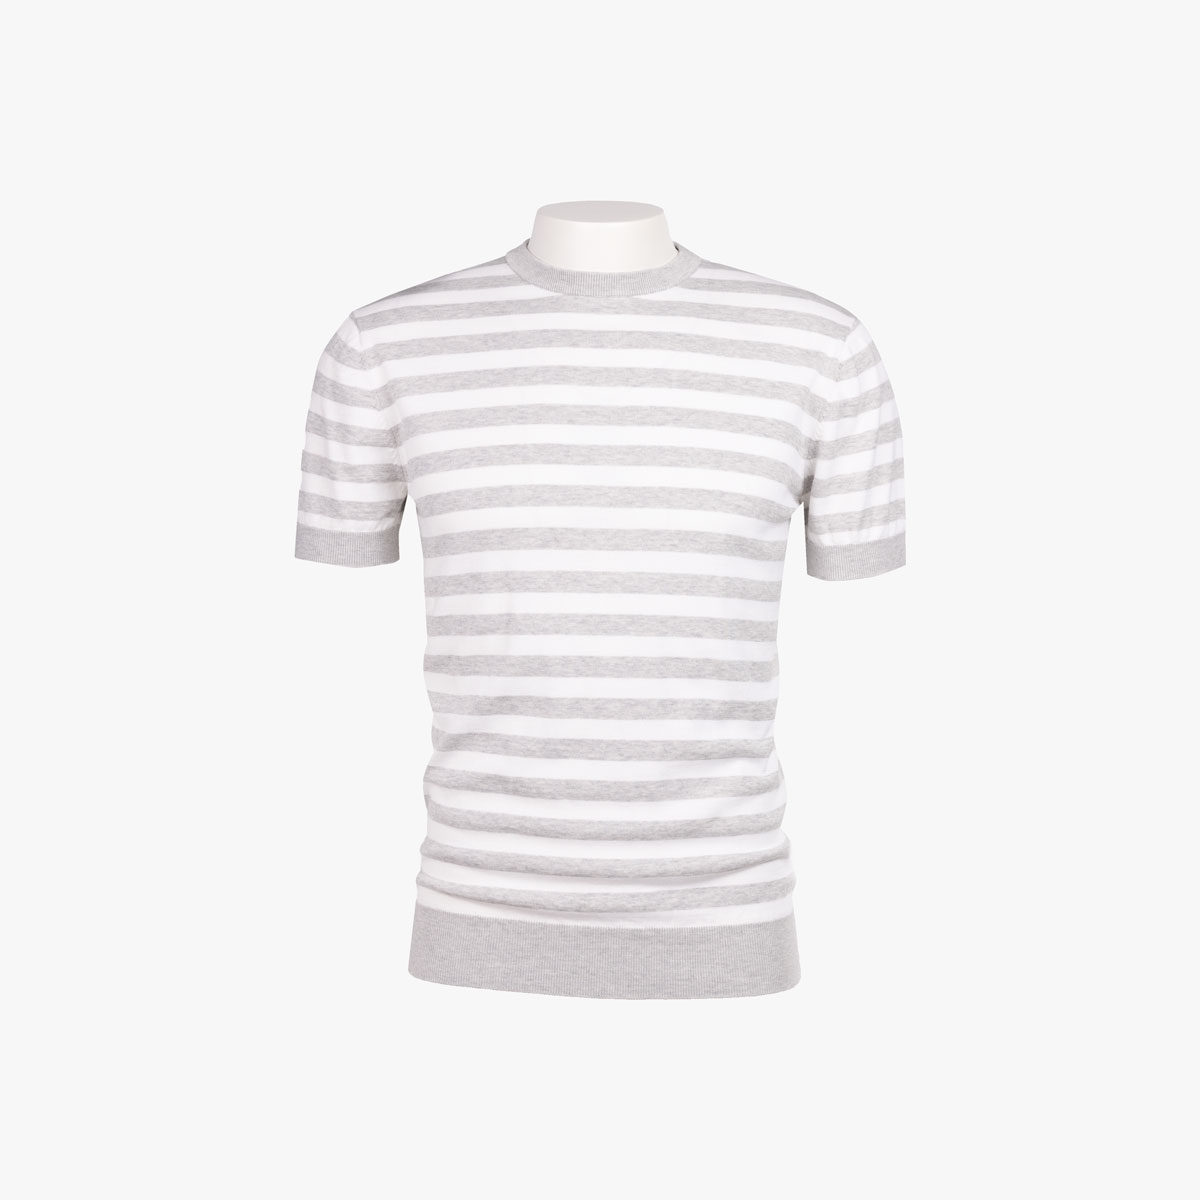 T-Shirt Rundhals mit Streifen in hellgrau-weiß